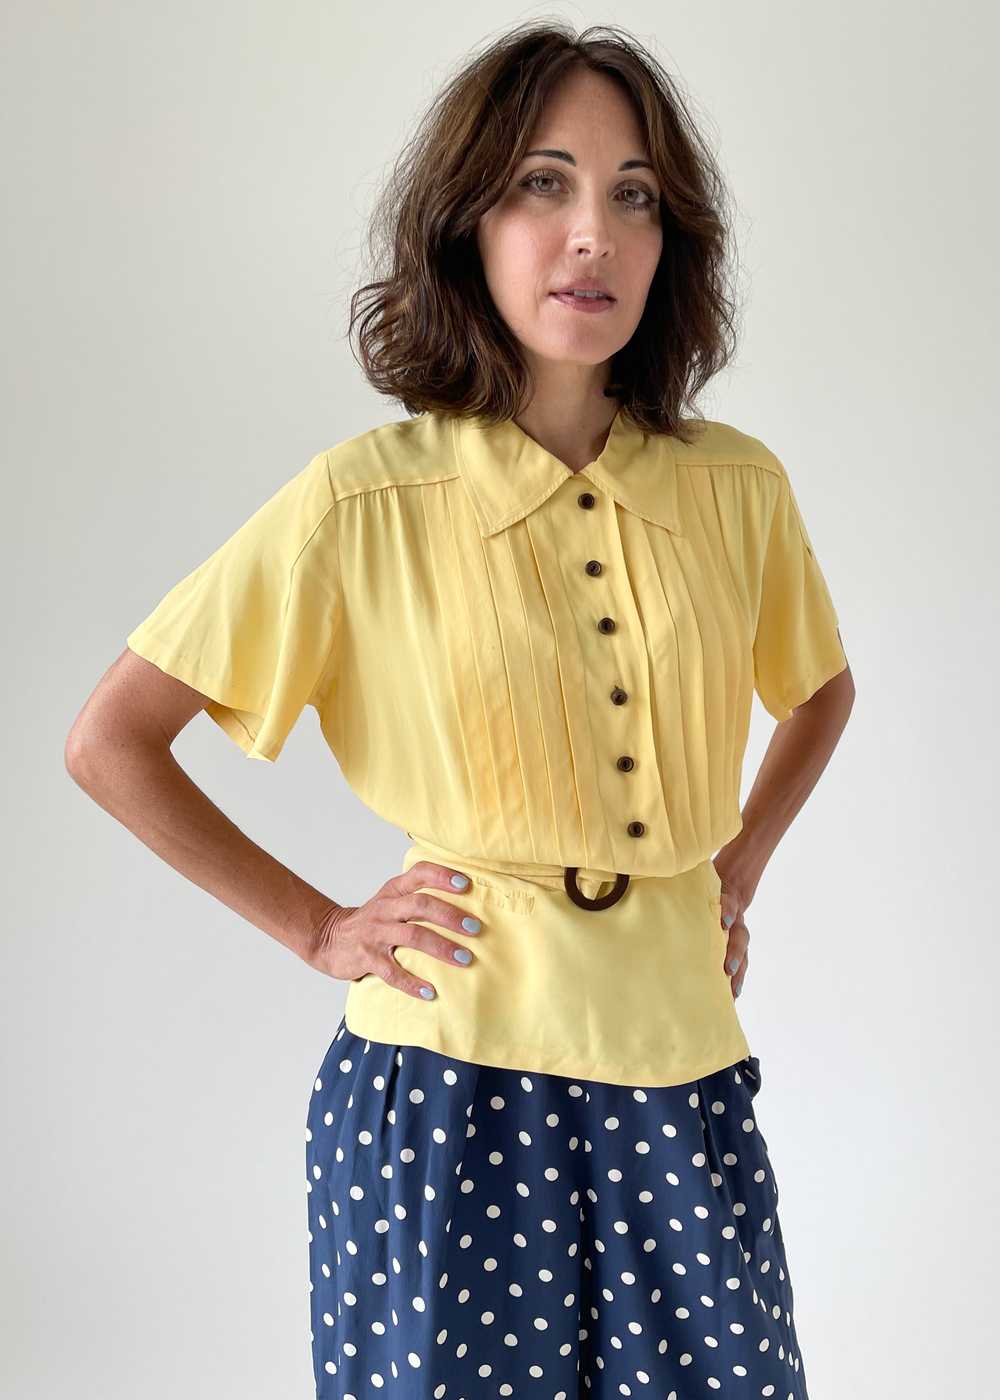 Vintage 1940s Daffodil Yellow Rayon Shirt - image 1